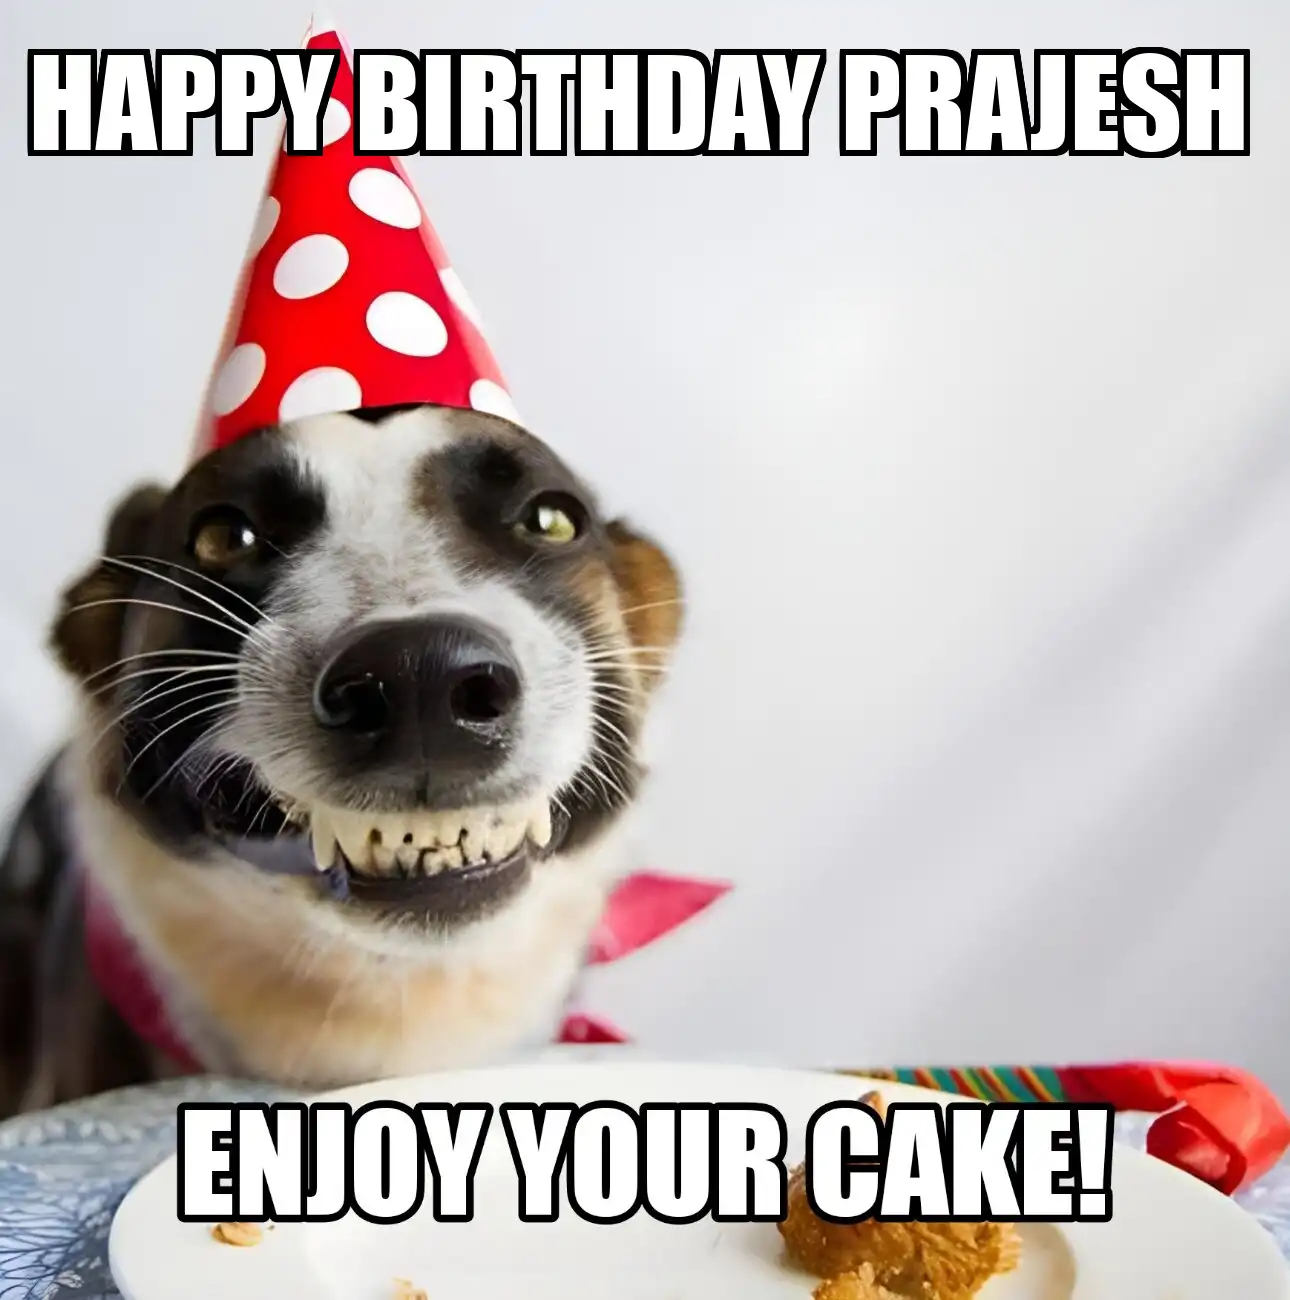 Happy Birthday Prajesh Enjoy Your Cake Dog Meme